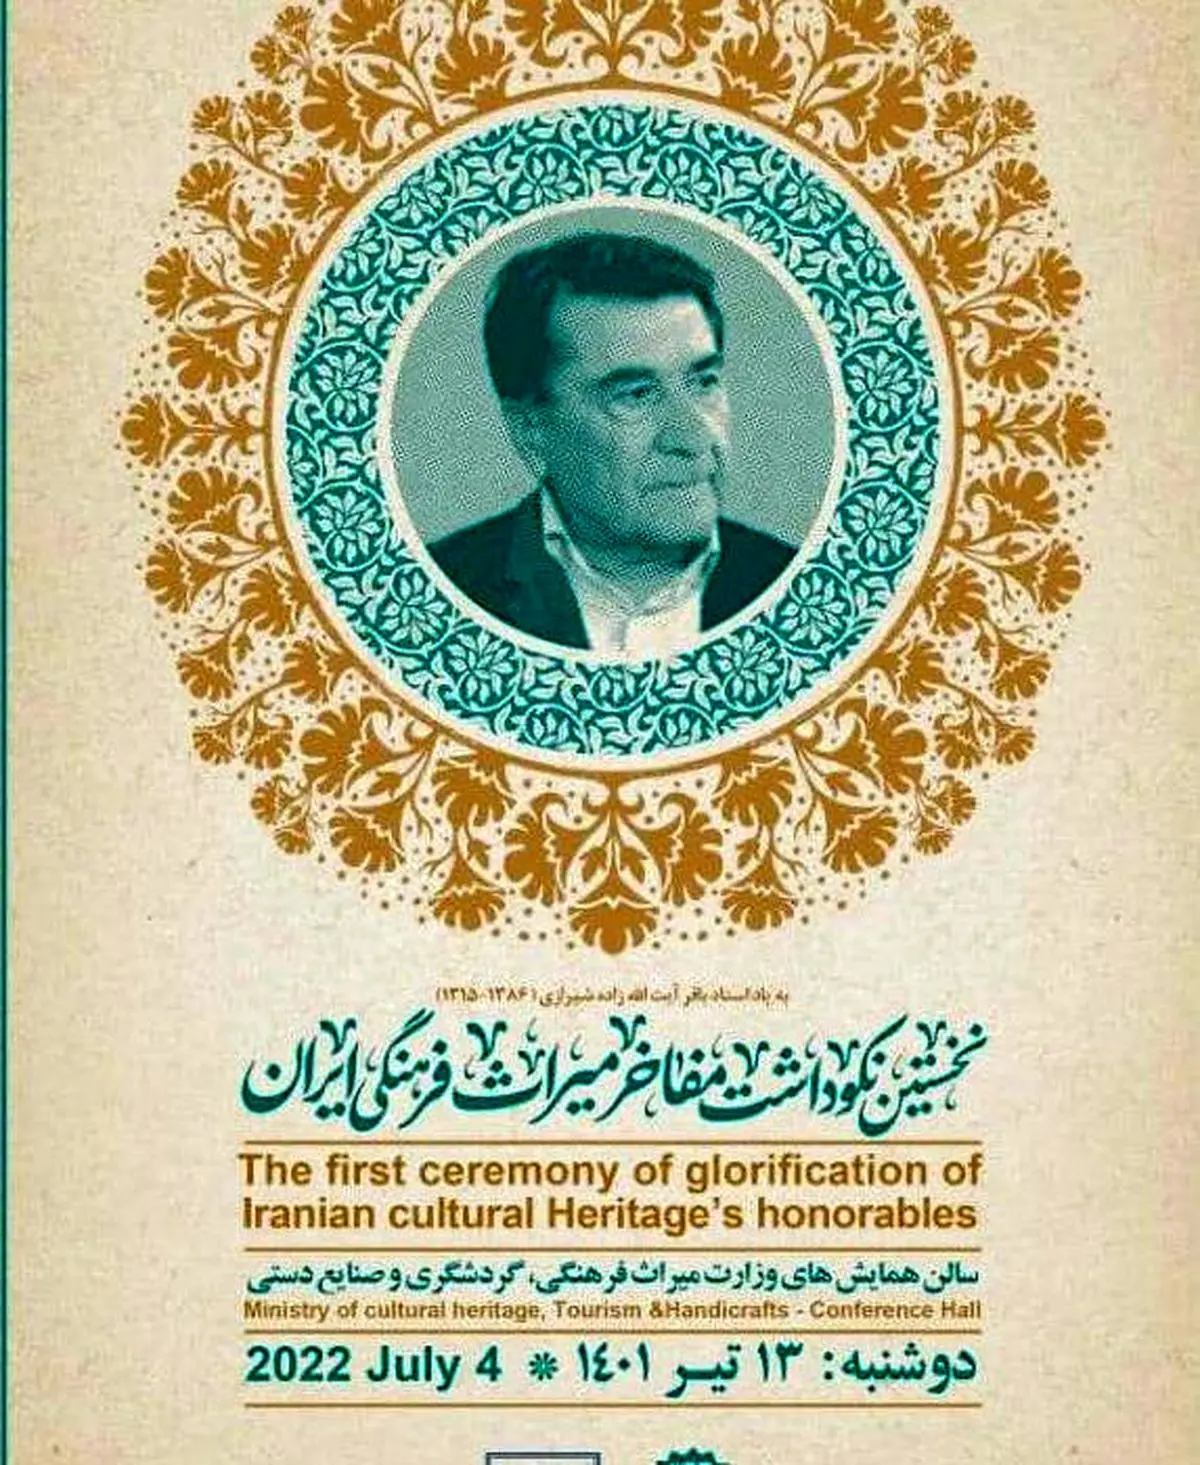 تجلیل از چهره های ماندگار میراث فرهنگی ایران+ فیلم
